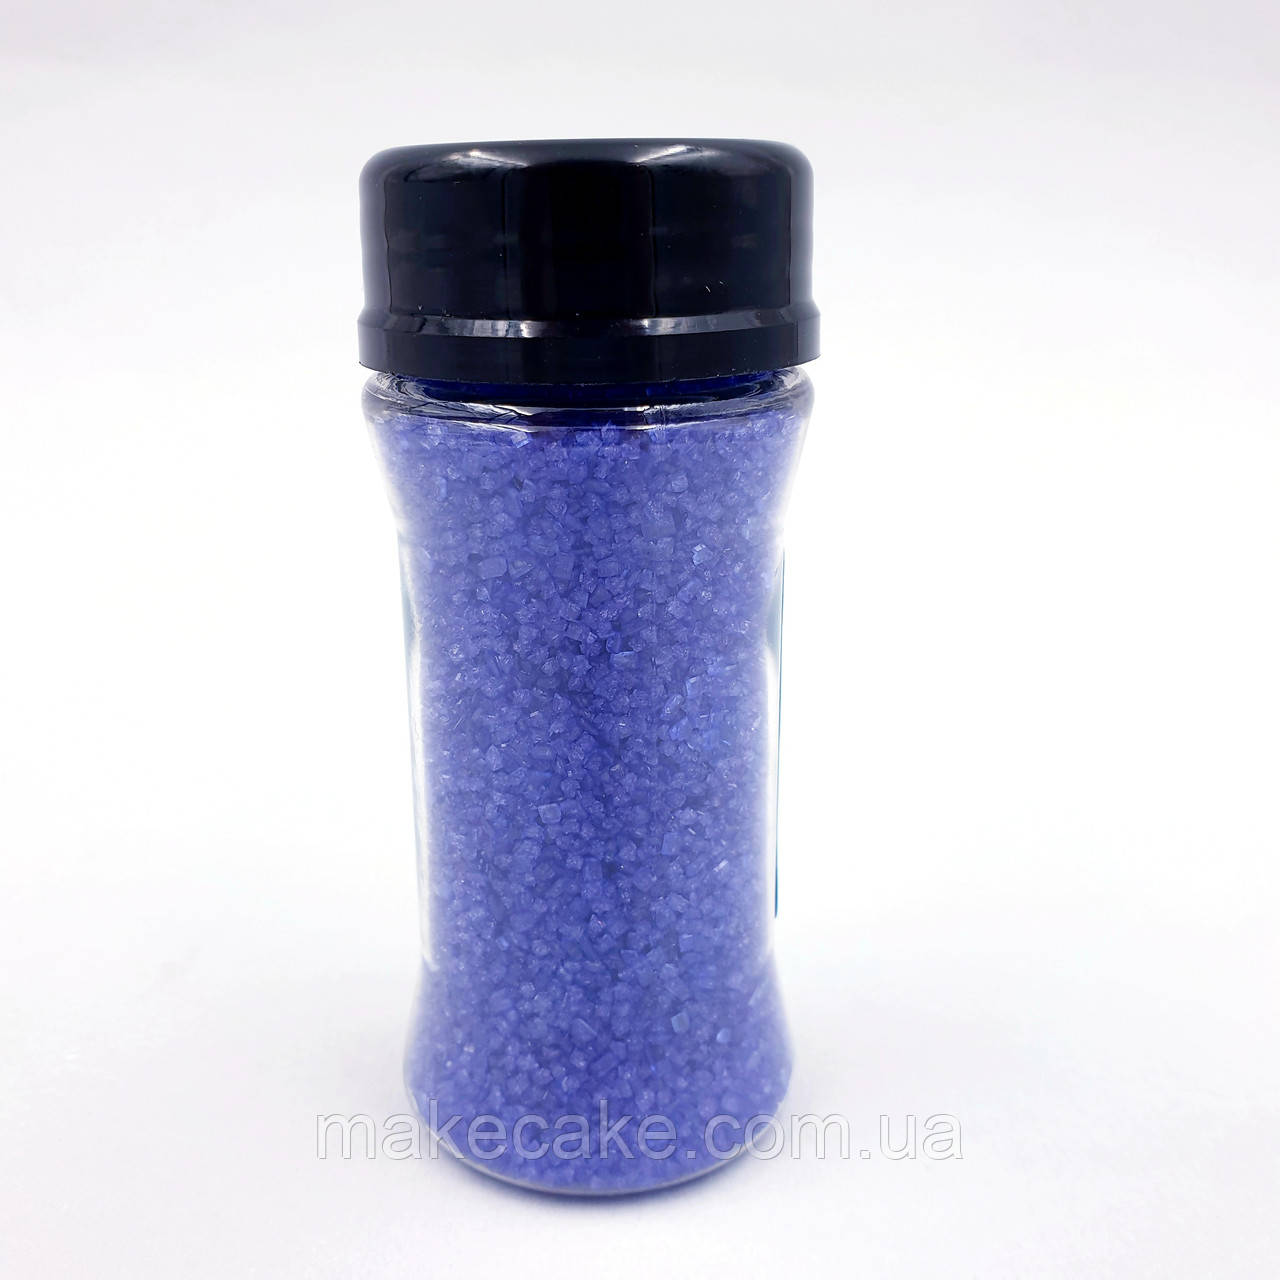 Цукор кольоровий великий (цукрові кристали) Confiseur Фіолетовий 70 г